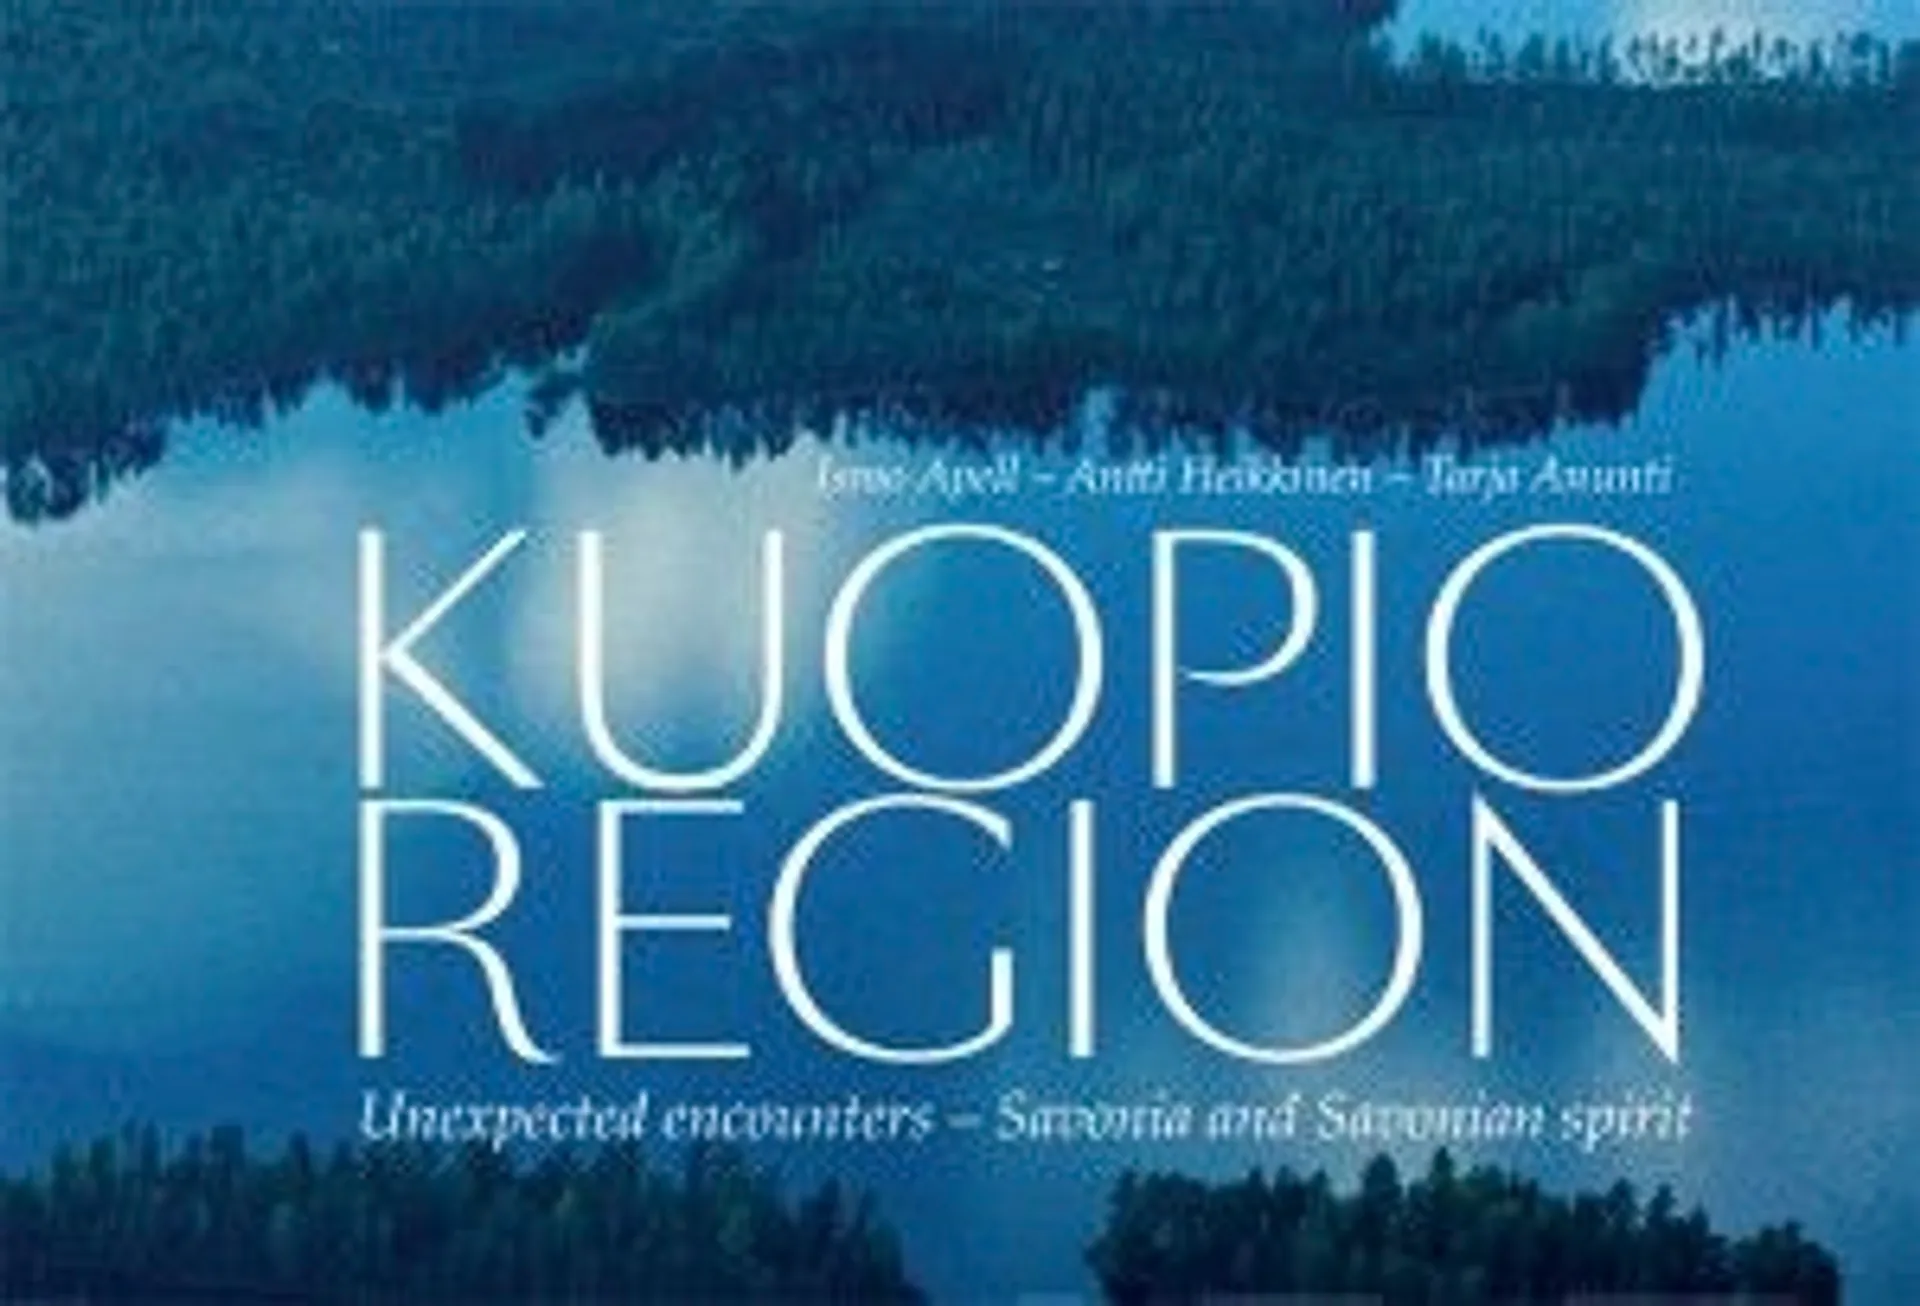 Apell, Kuopio Region